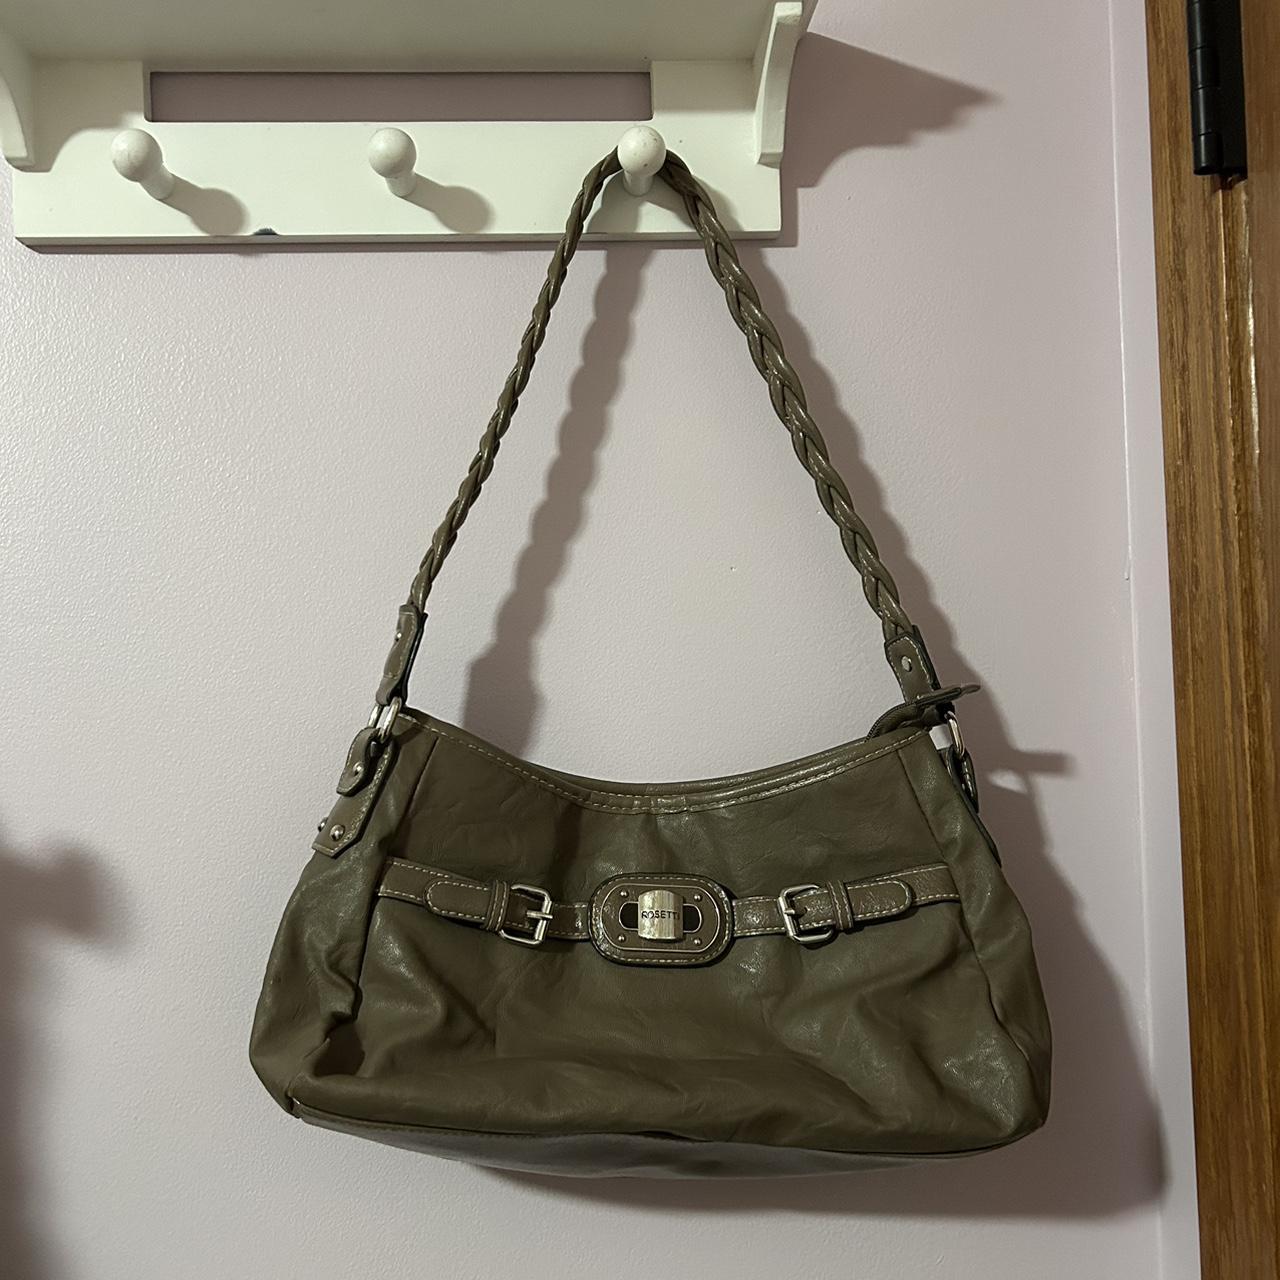 Rosetti Paisley Bags & Handbags for Women for sale | eBay